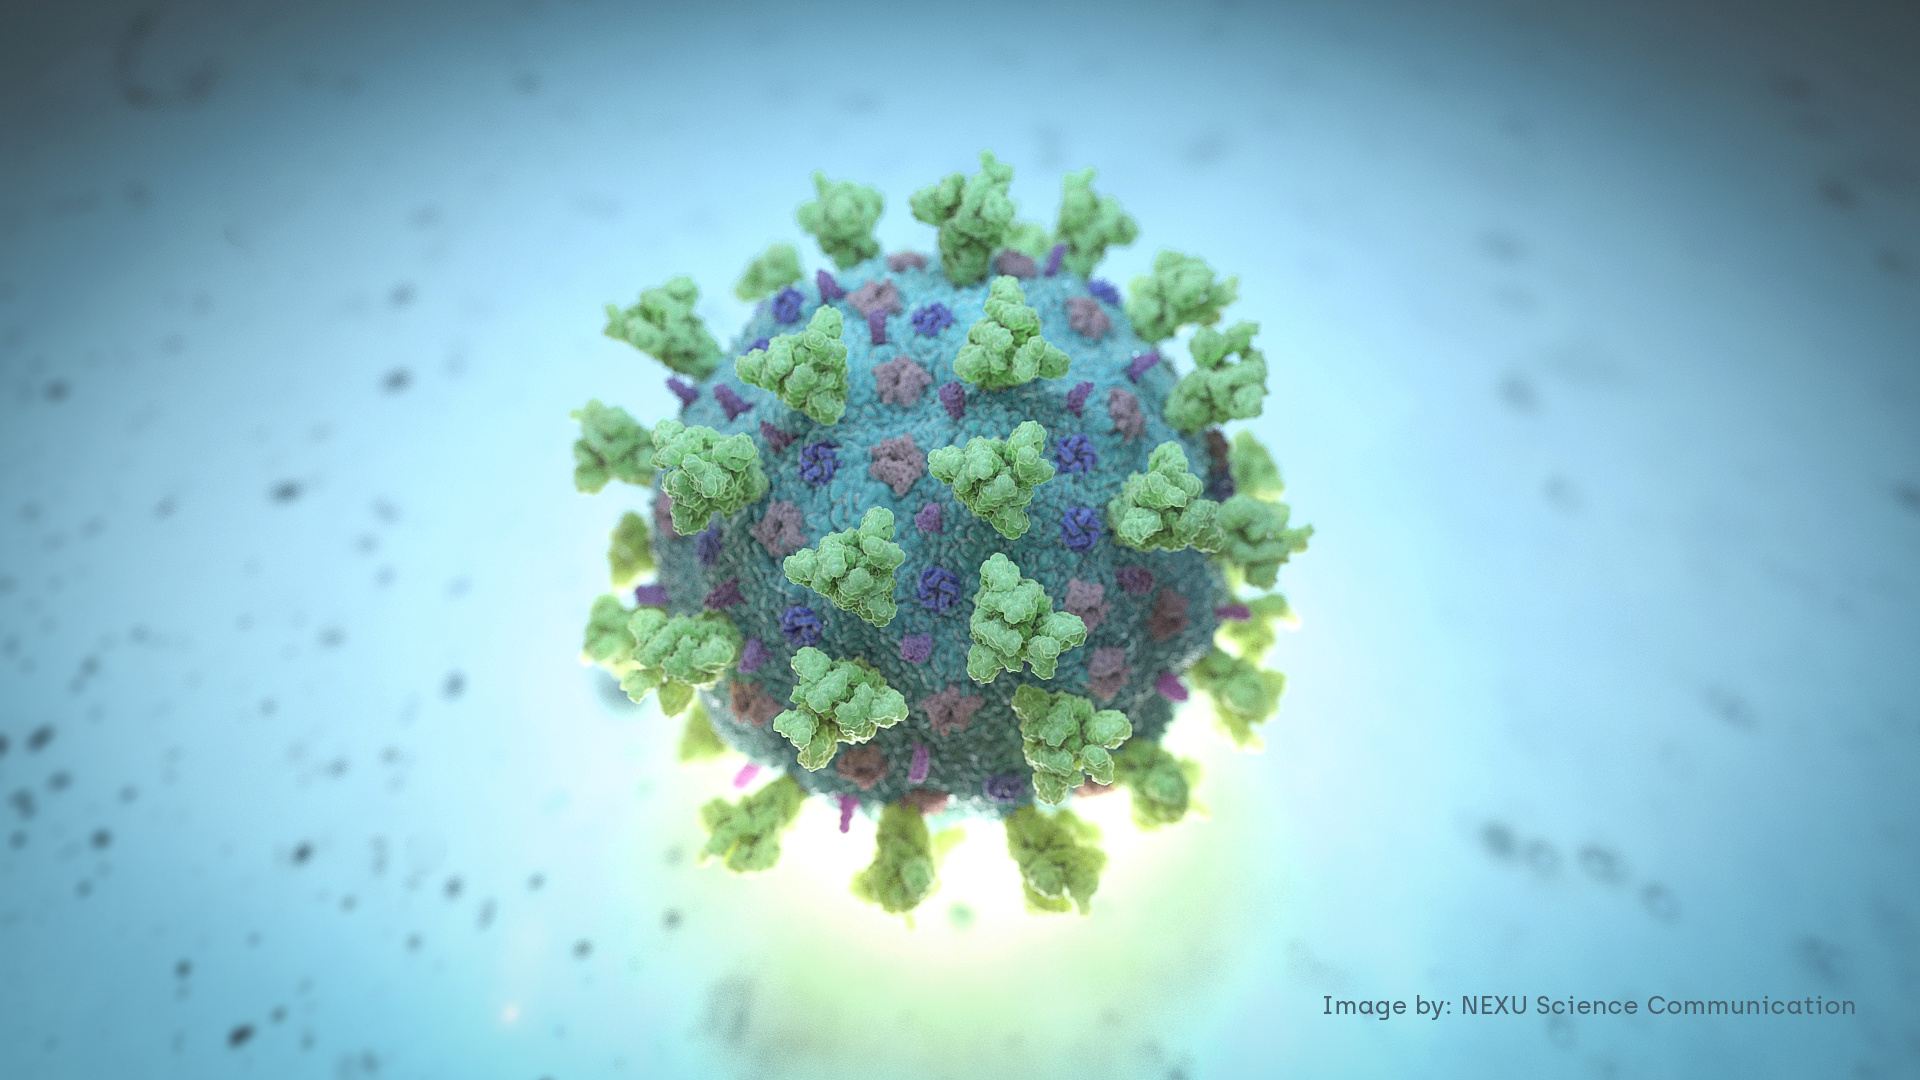 Coronavirus: L'humidité réduirait la contamination par aérosol